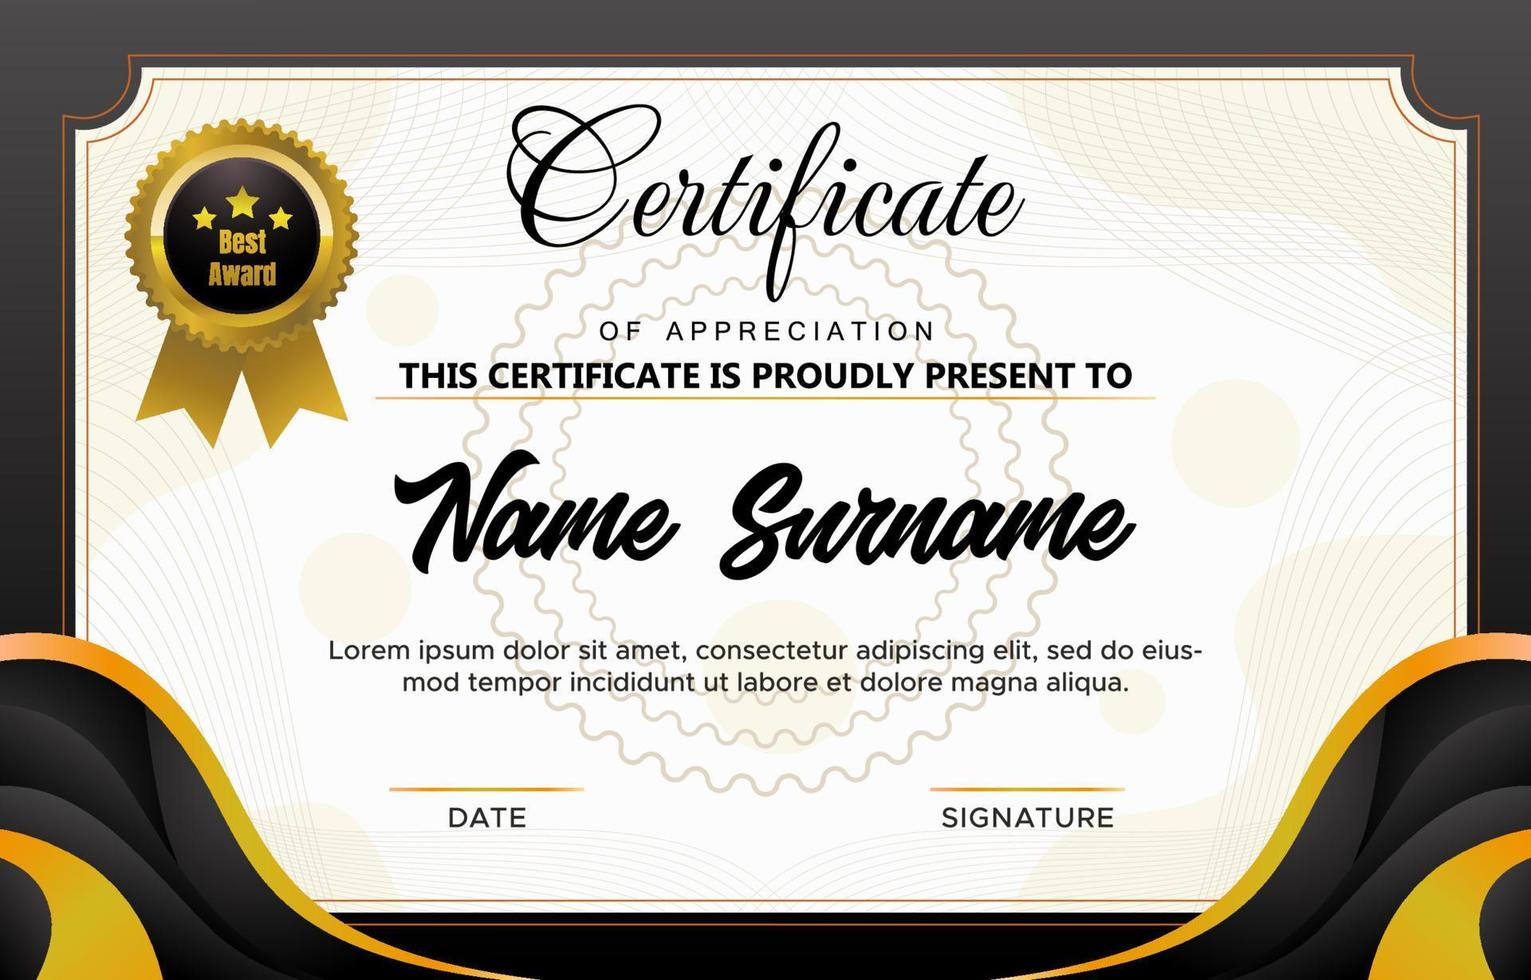 Certificate of Seminar Template vector